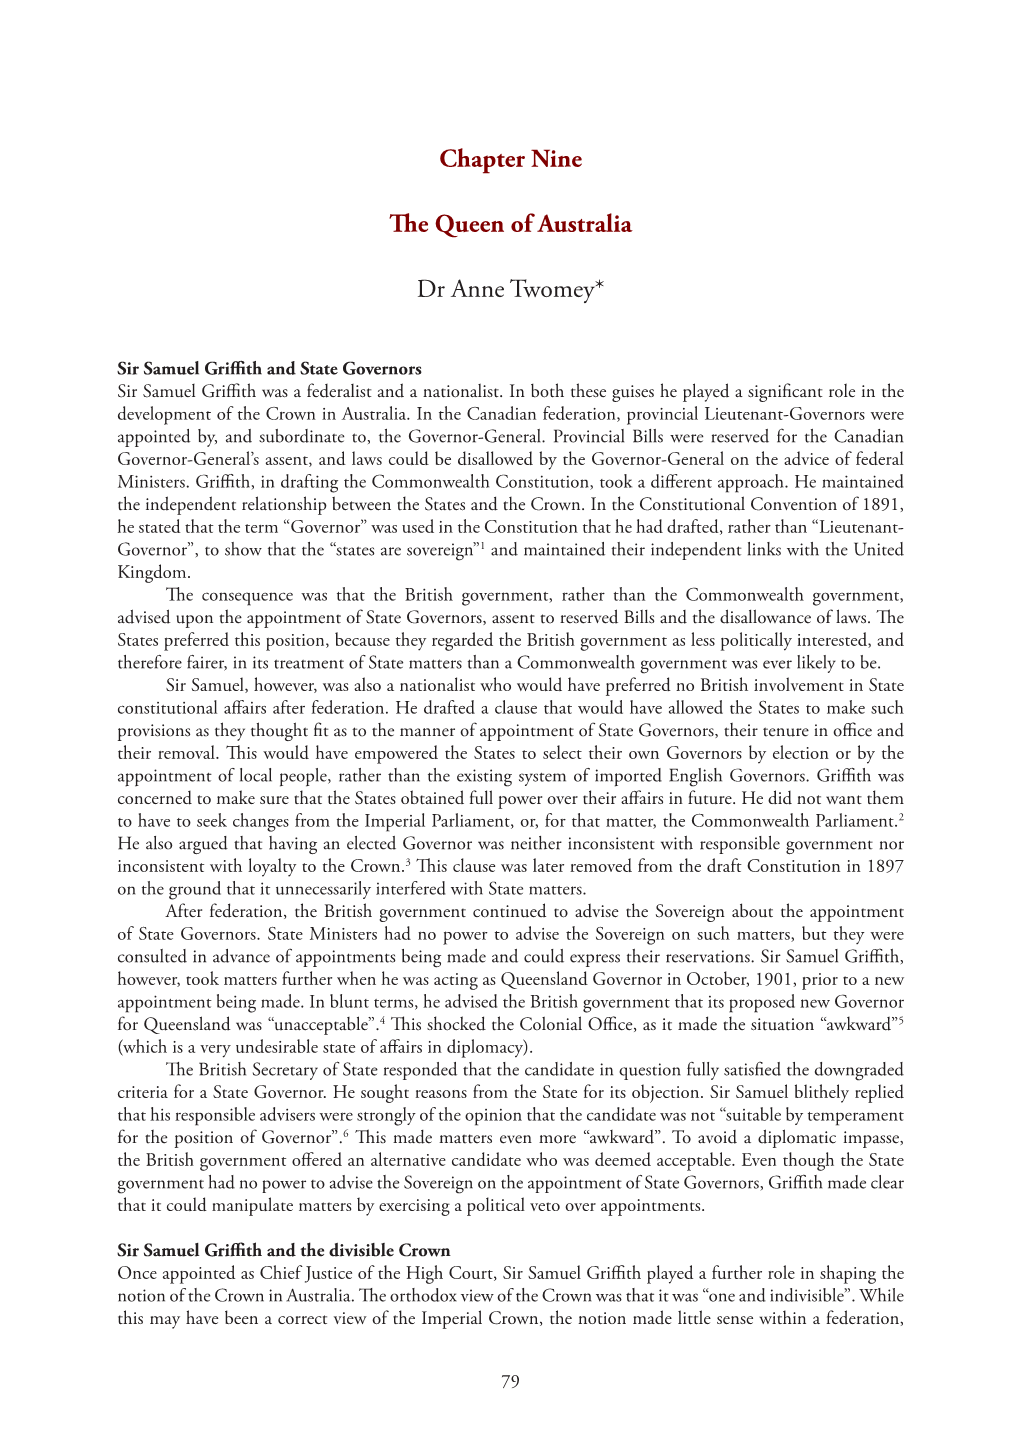 Upholding the Australian Constitution Volume Nineteen